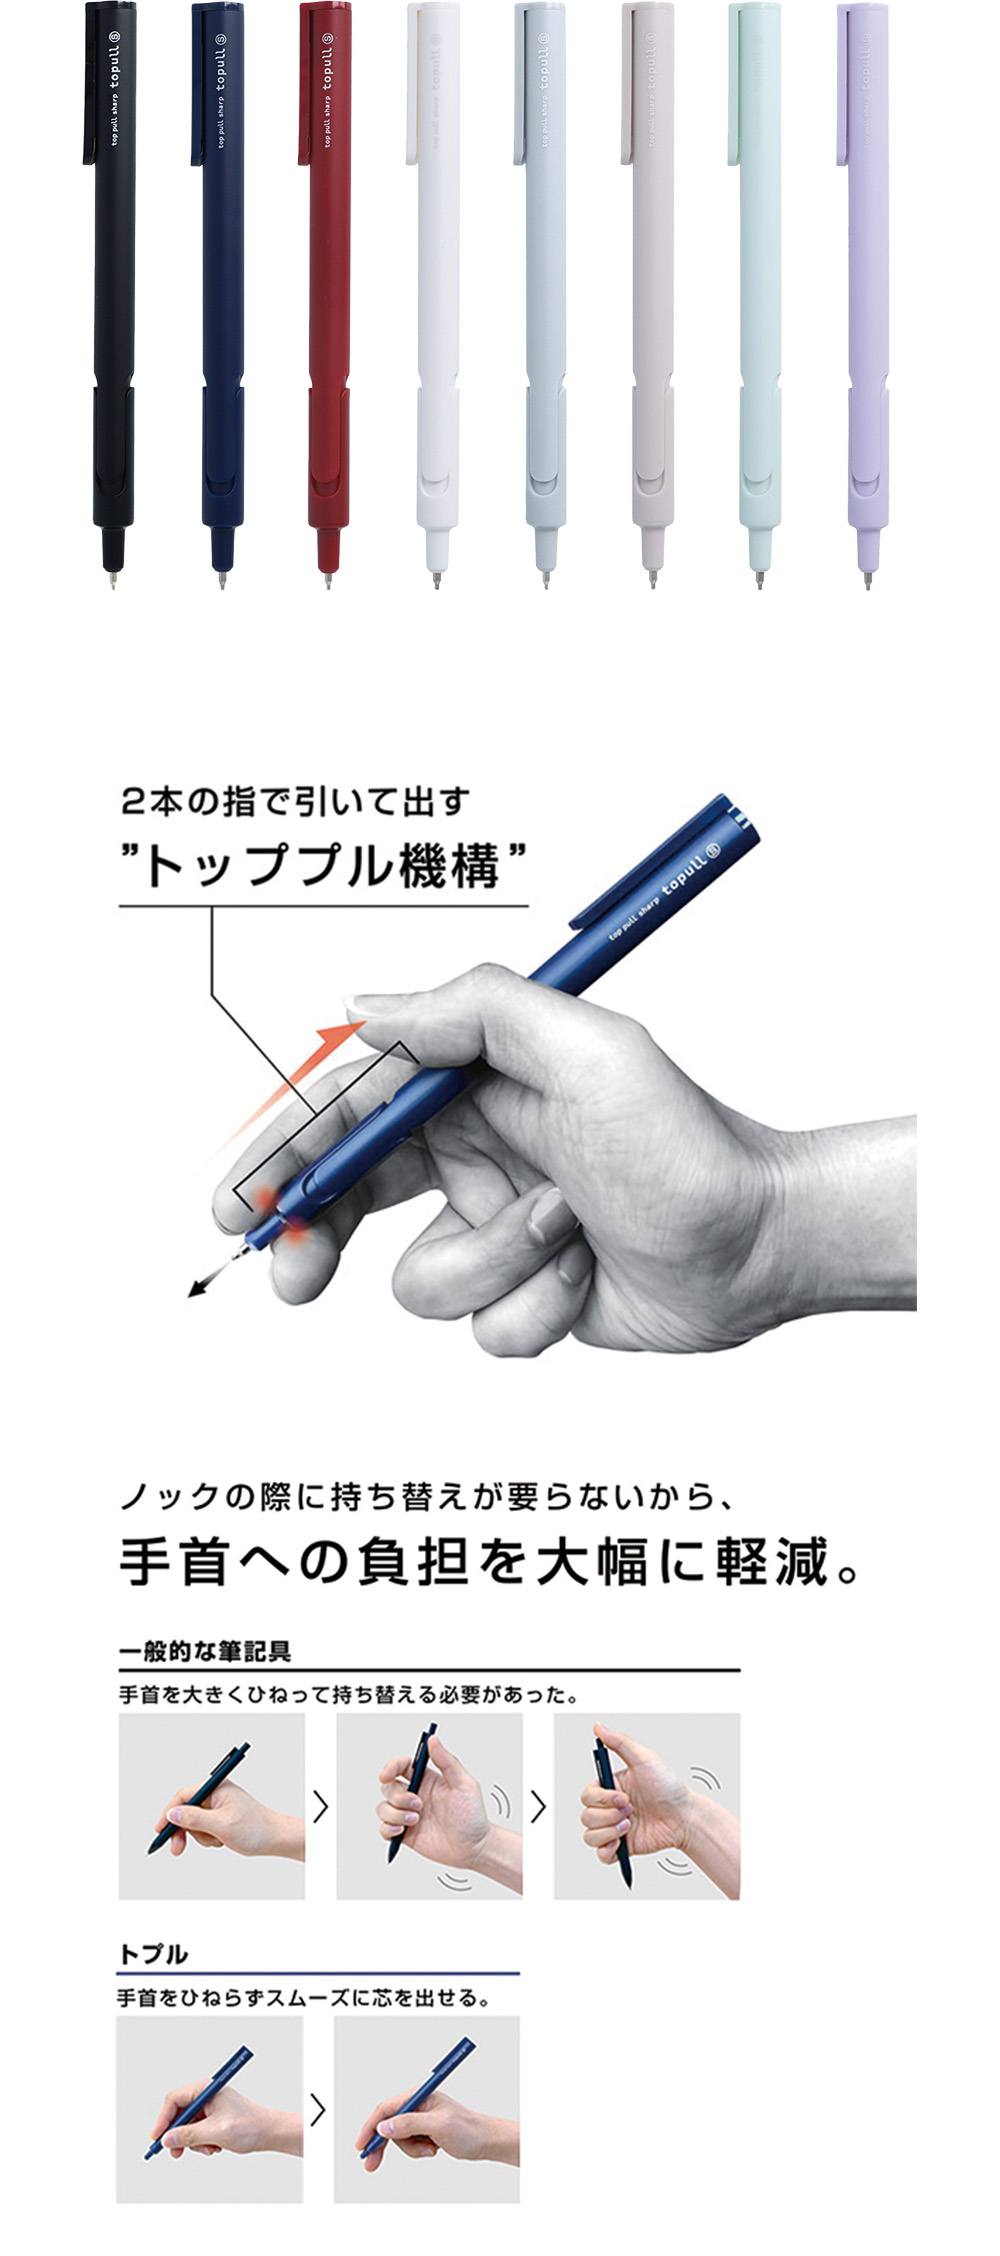 自動鉛筆 藍色 自動鉛筆 黑色 自動鉛筆 紫色